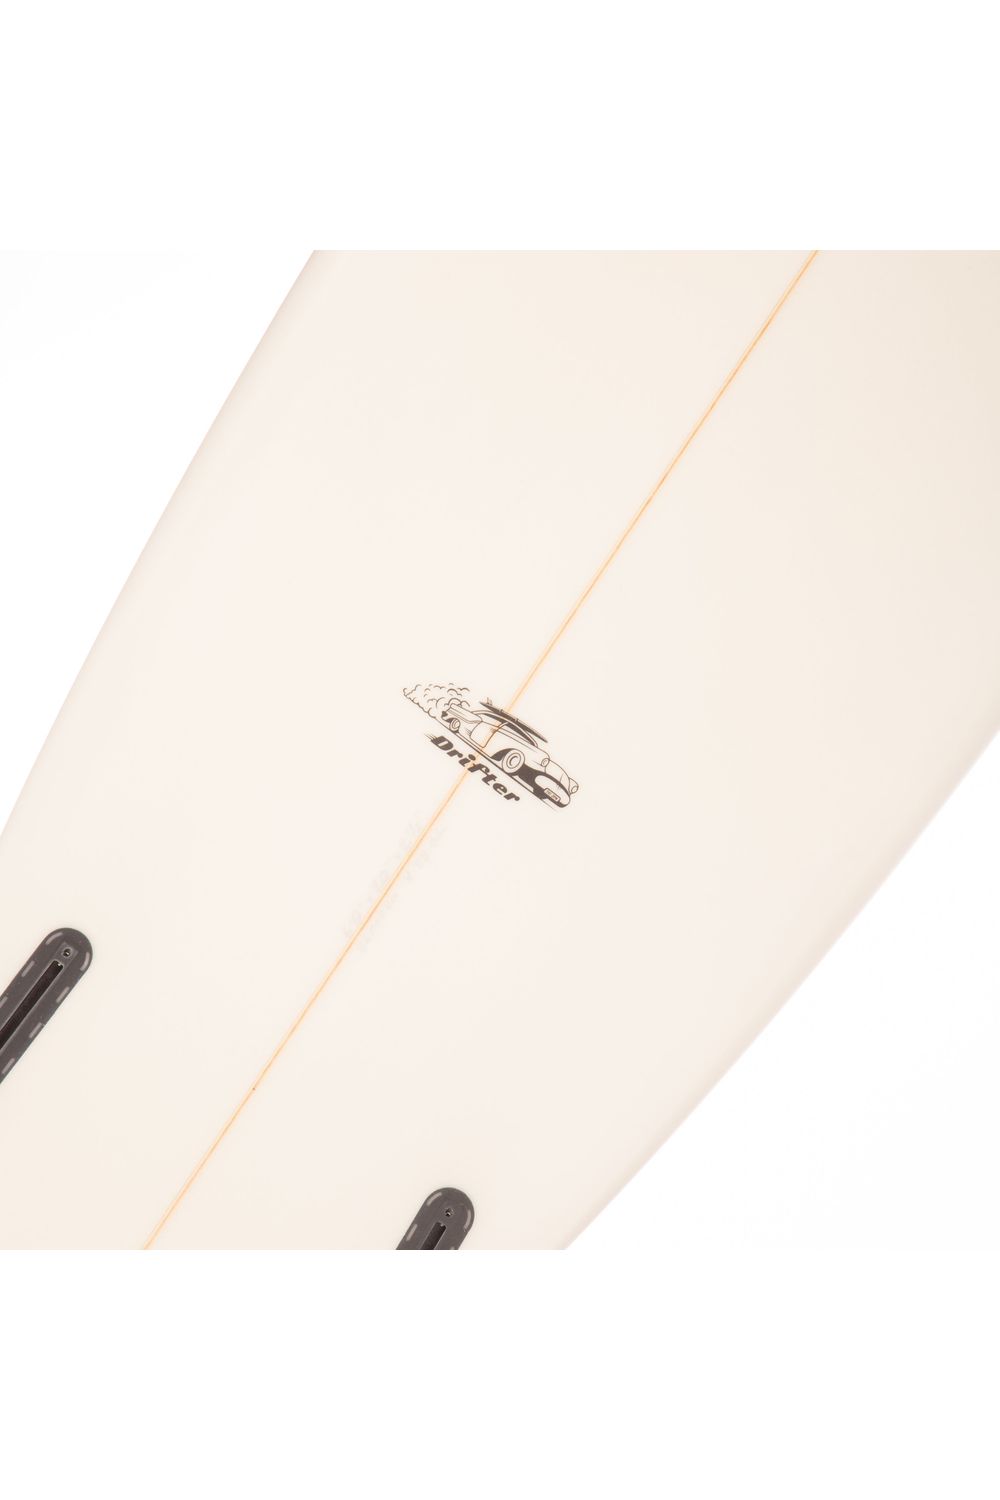 Tiki Custom Surfboard - 6'0 Drifter Twin - Clear